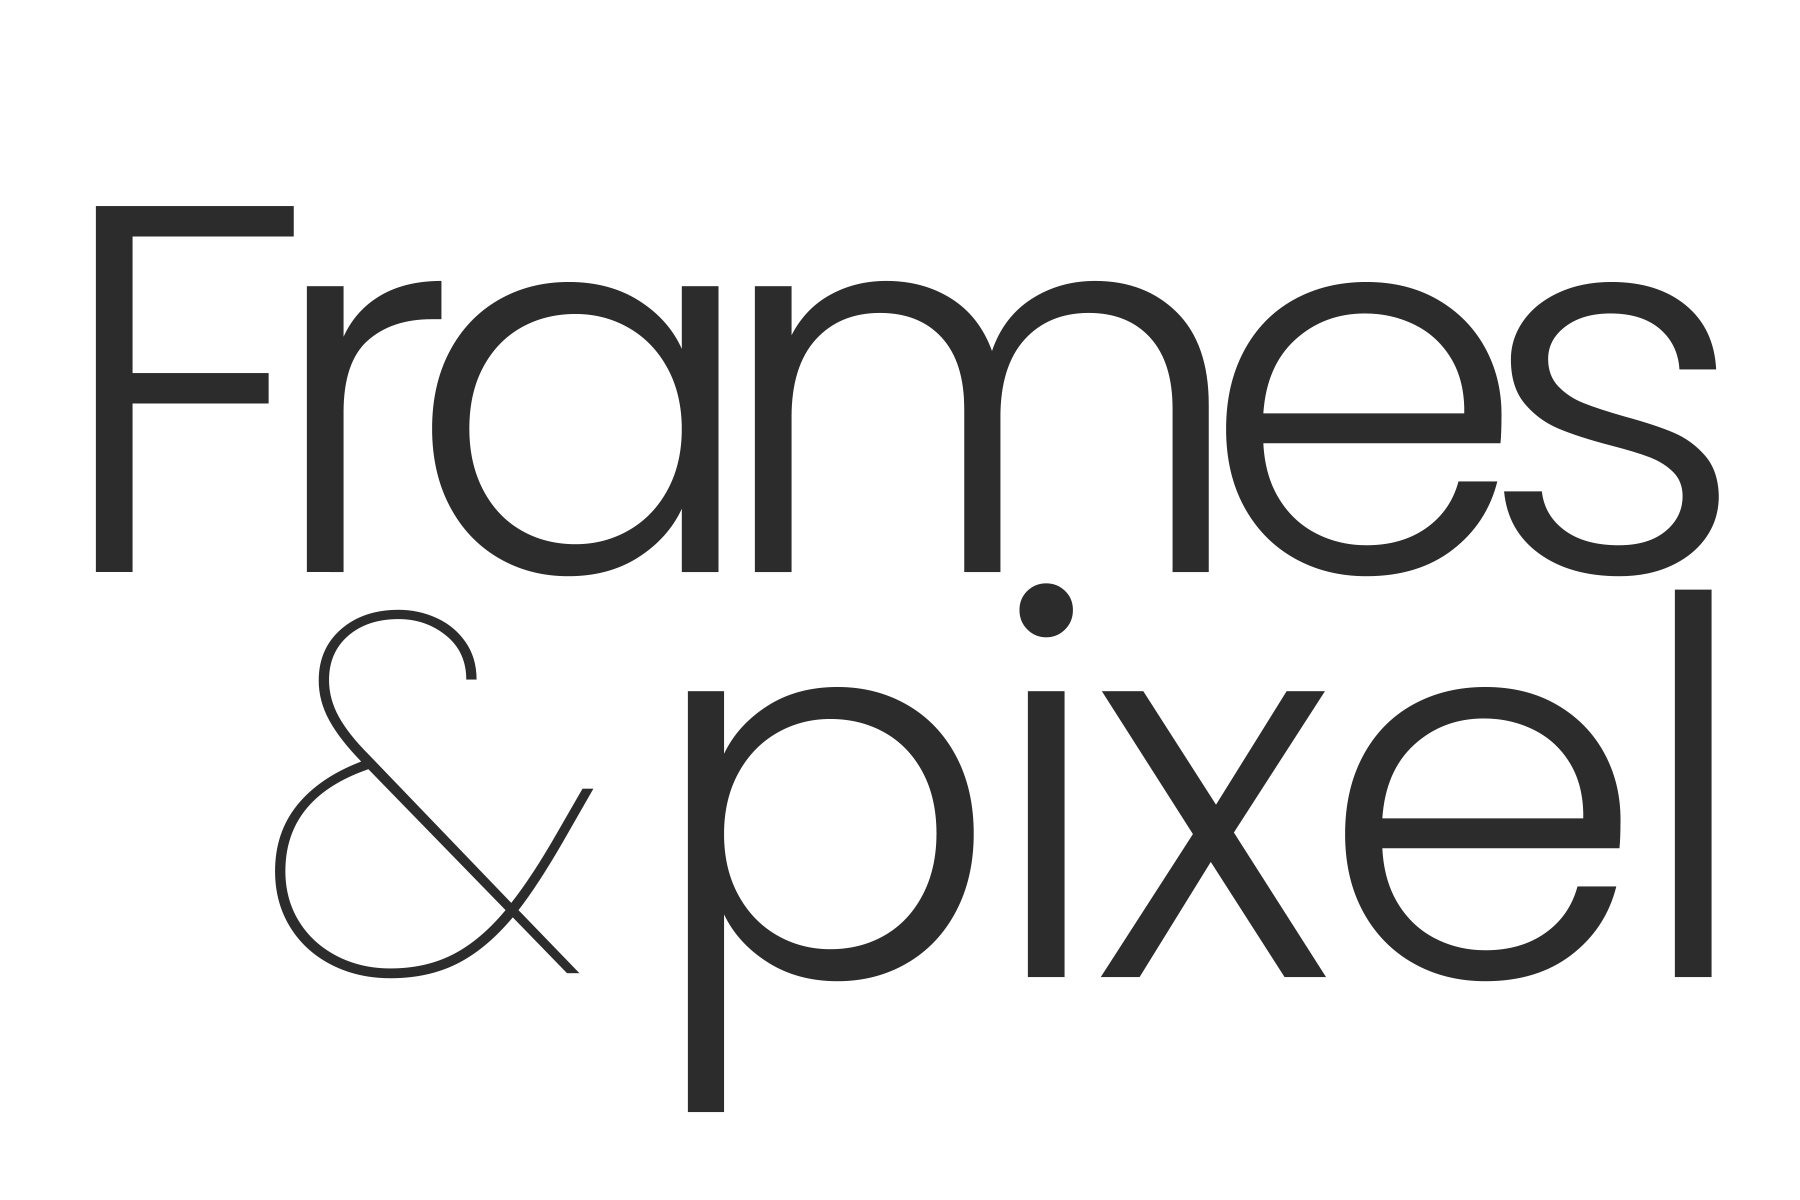 Frames & Pixel 